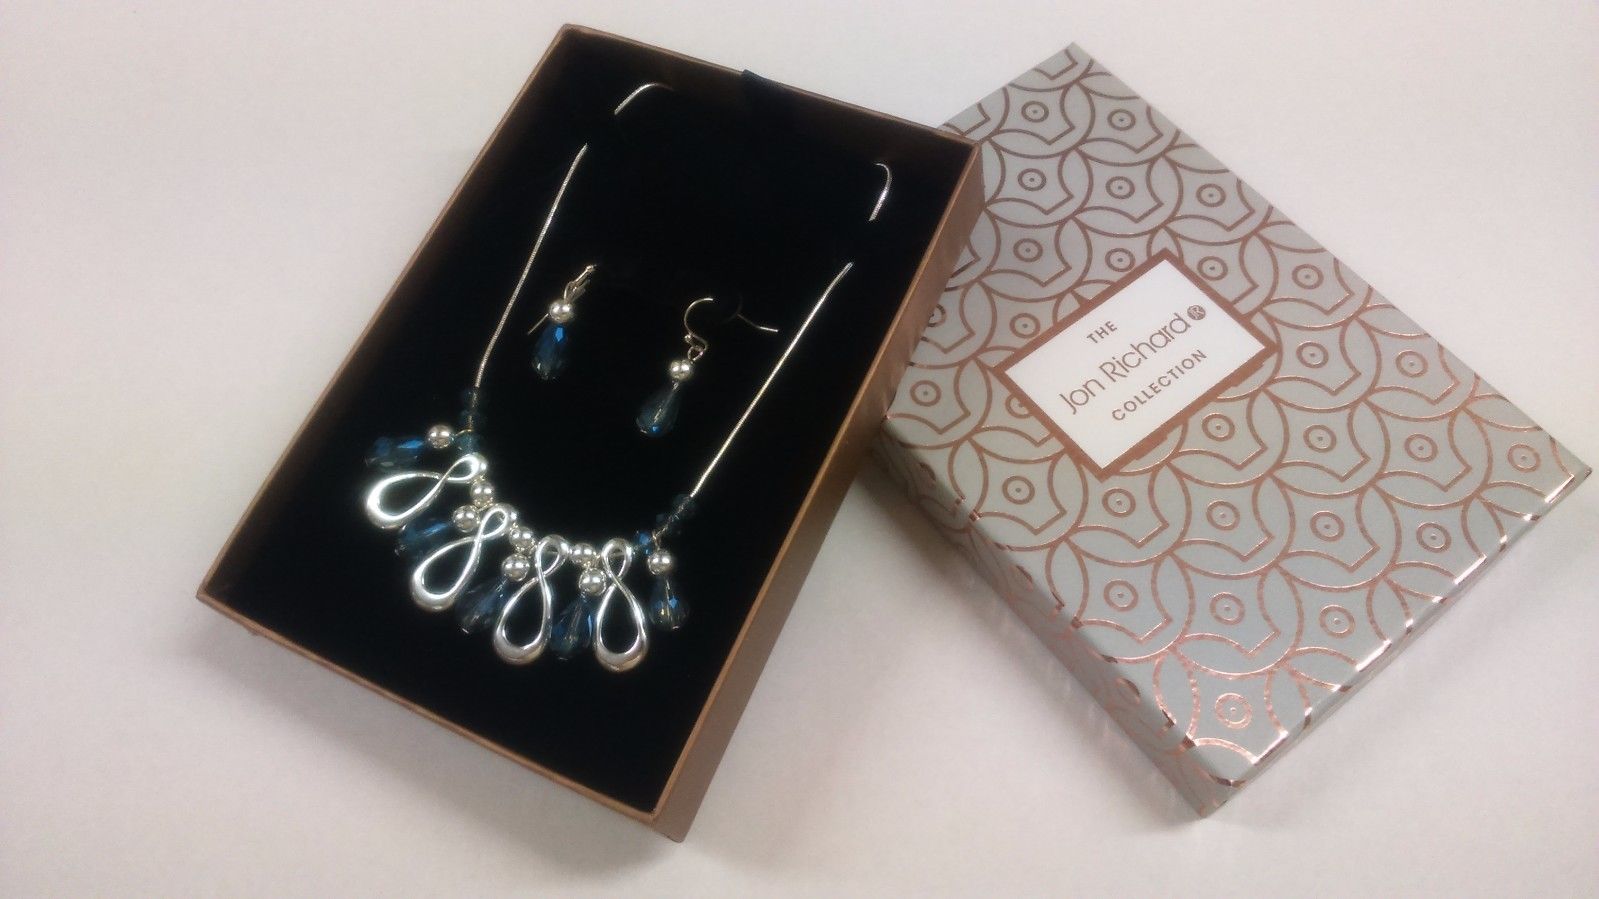 Jon Richard Silver Infinity & Blue Bead Jewellery Set Necklace & Earings